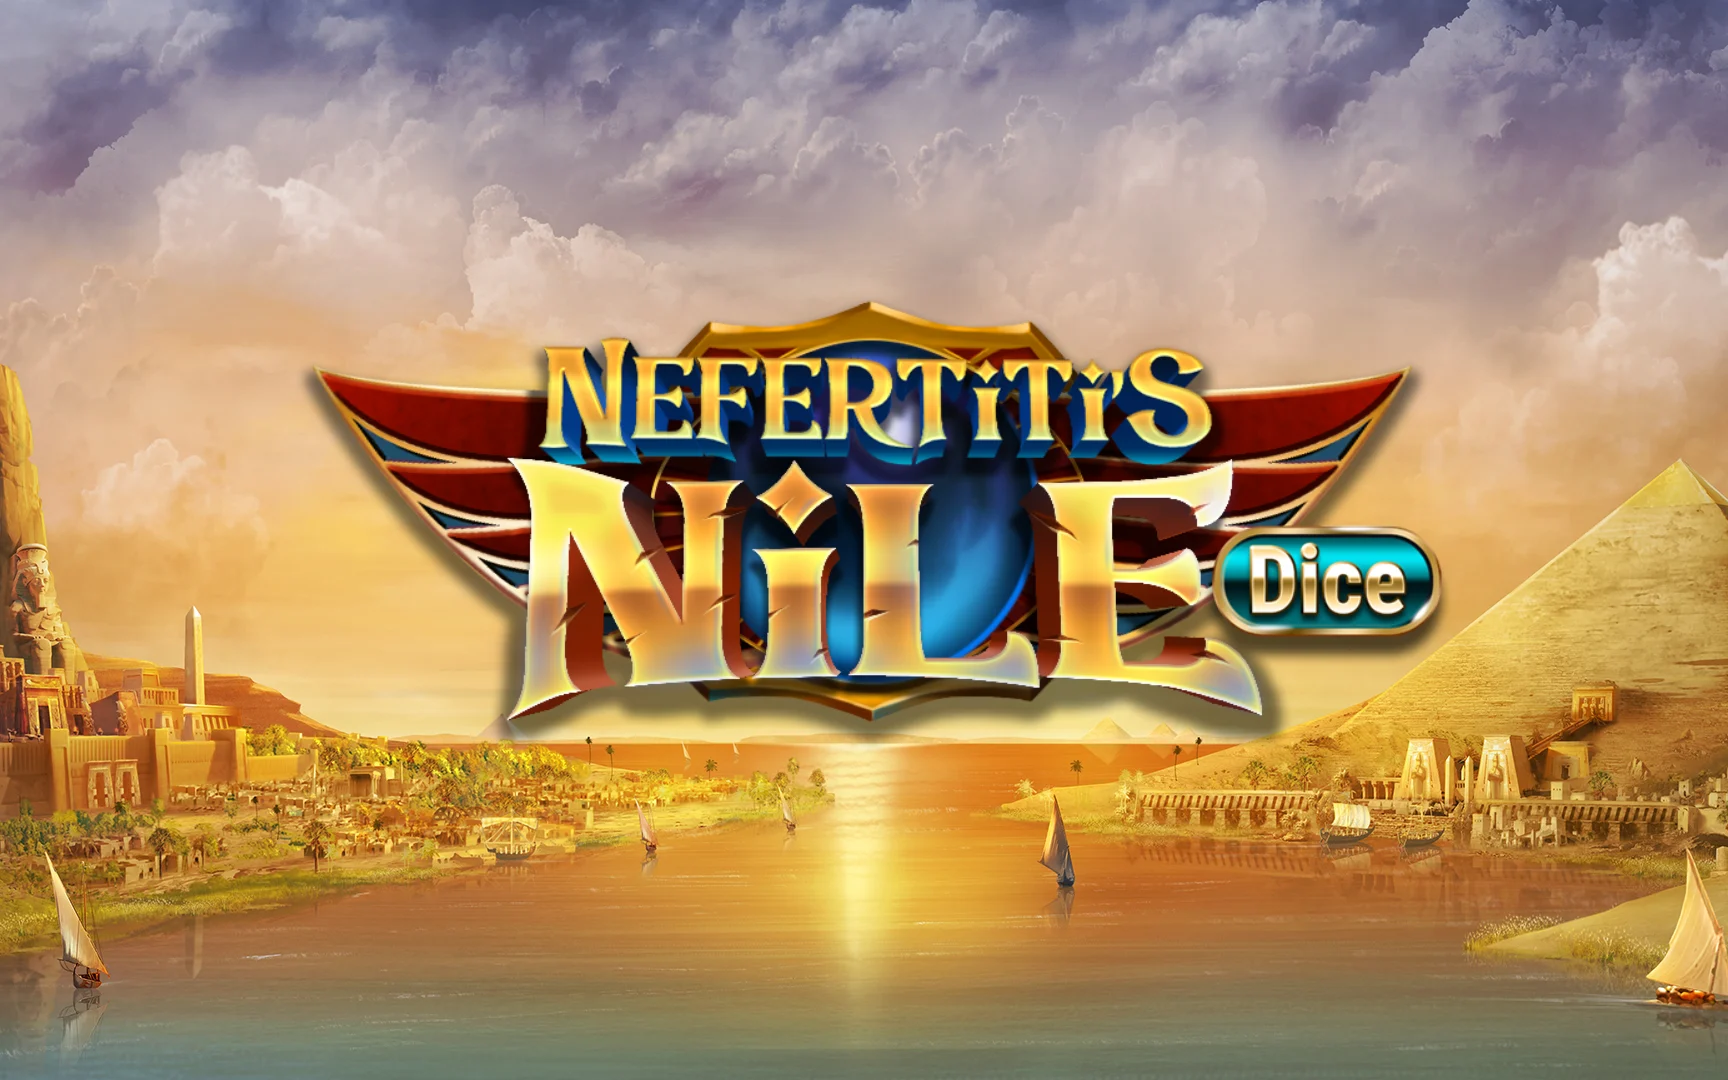 Gioca a Nefertiti's Nile Dice sul casino online Starcasino.be